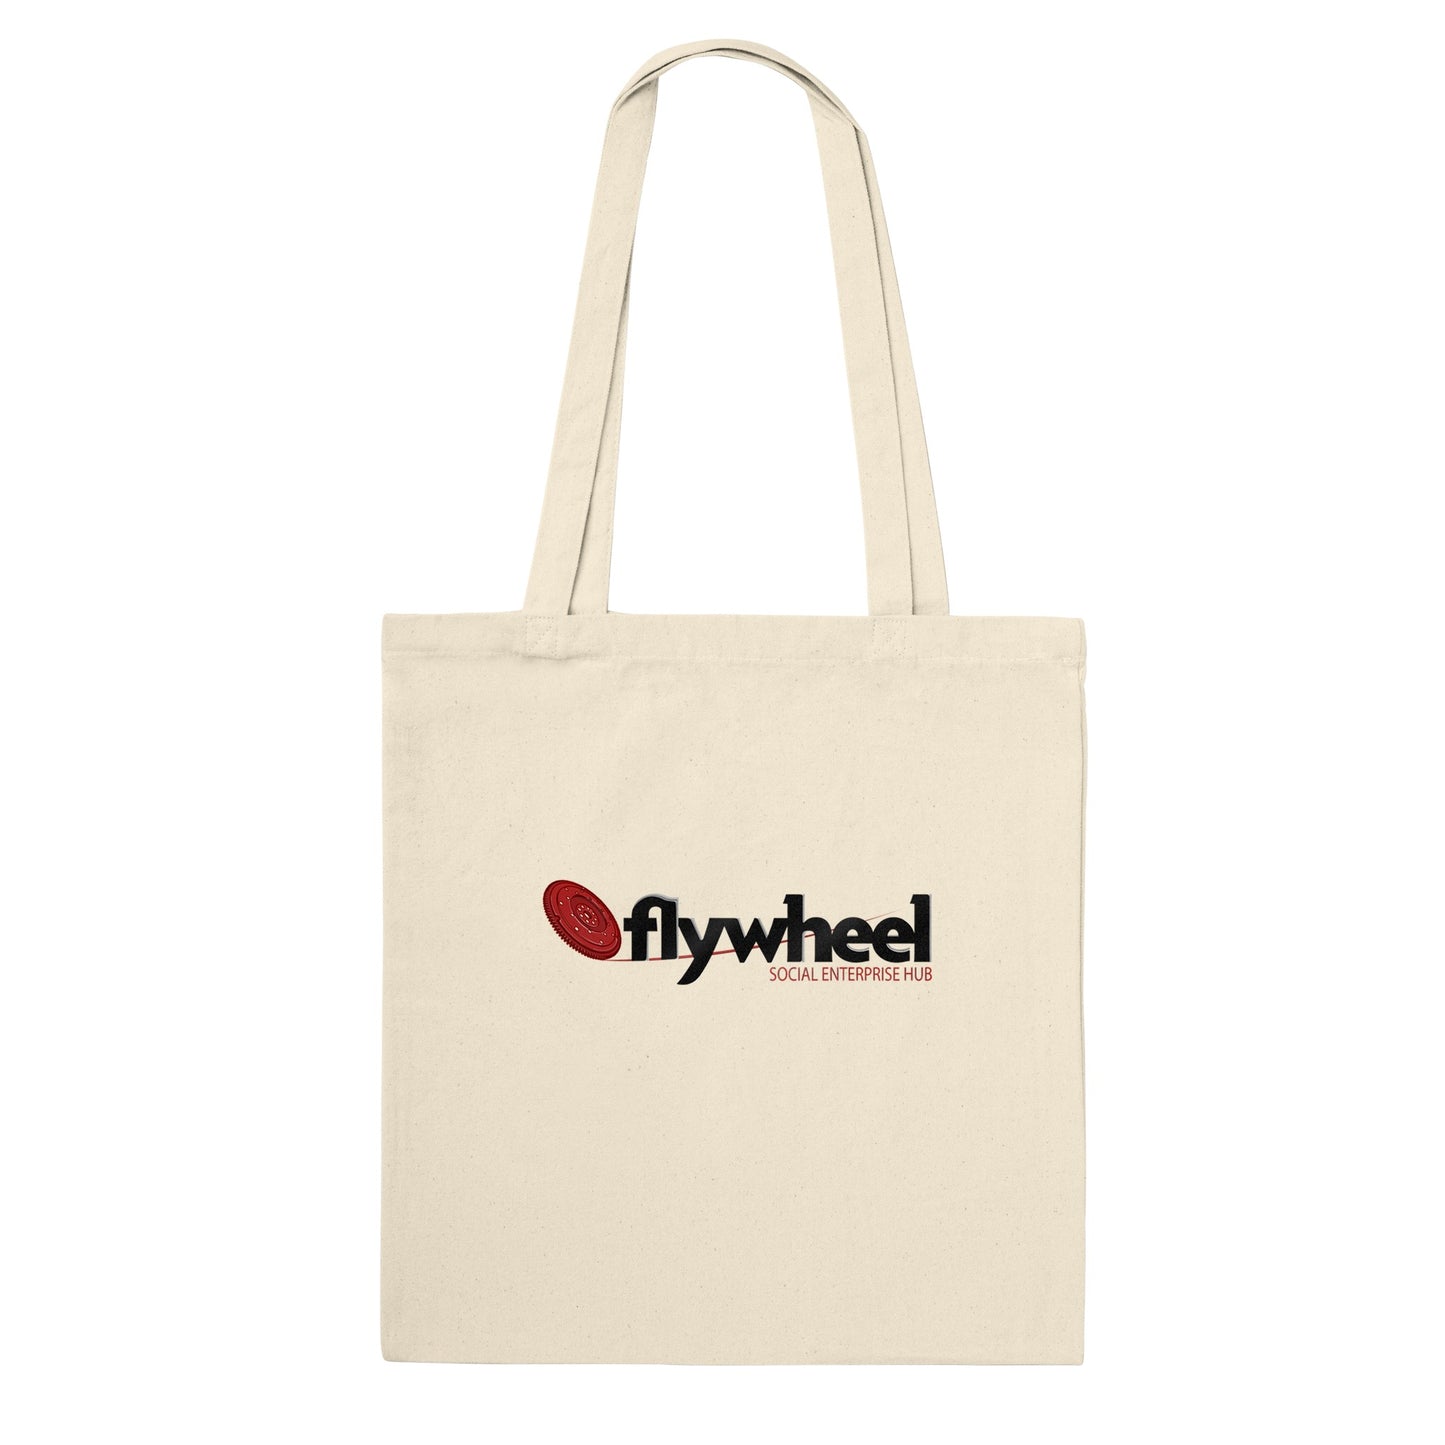 Flywheel Social Enterprise Hub - Premium Tote Bag